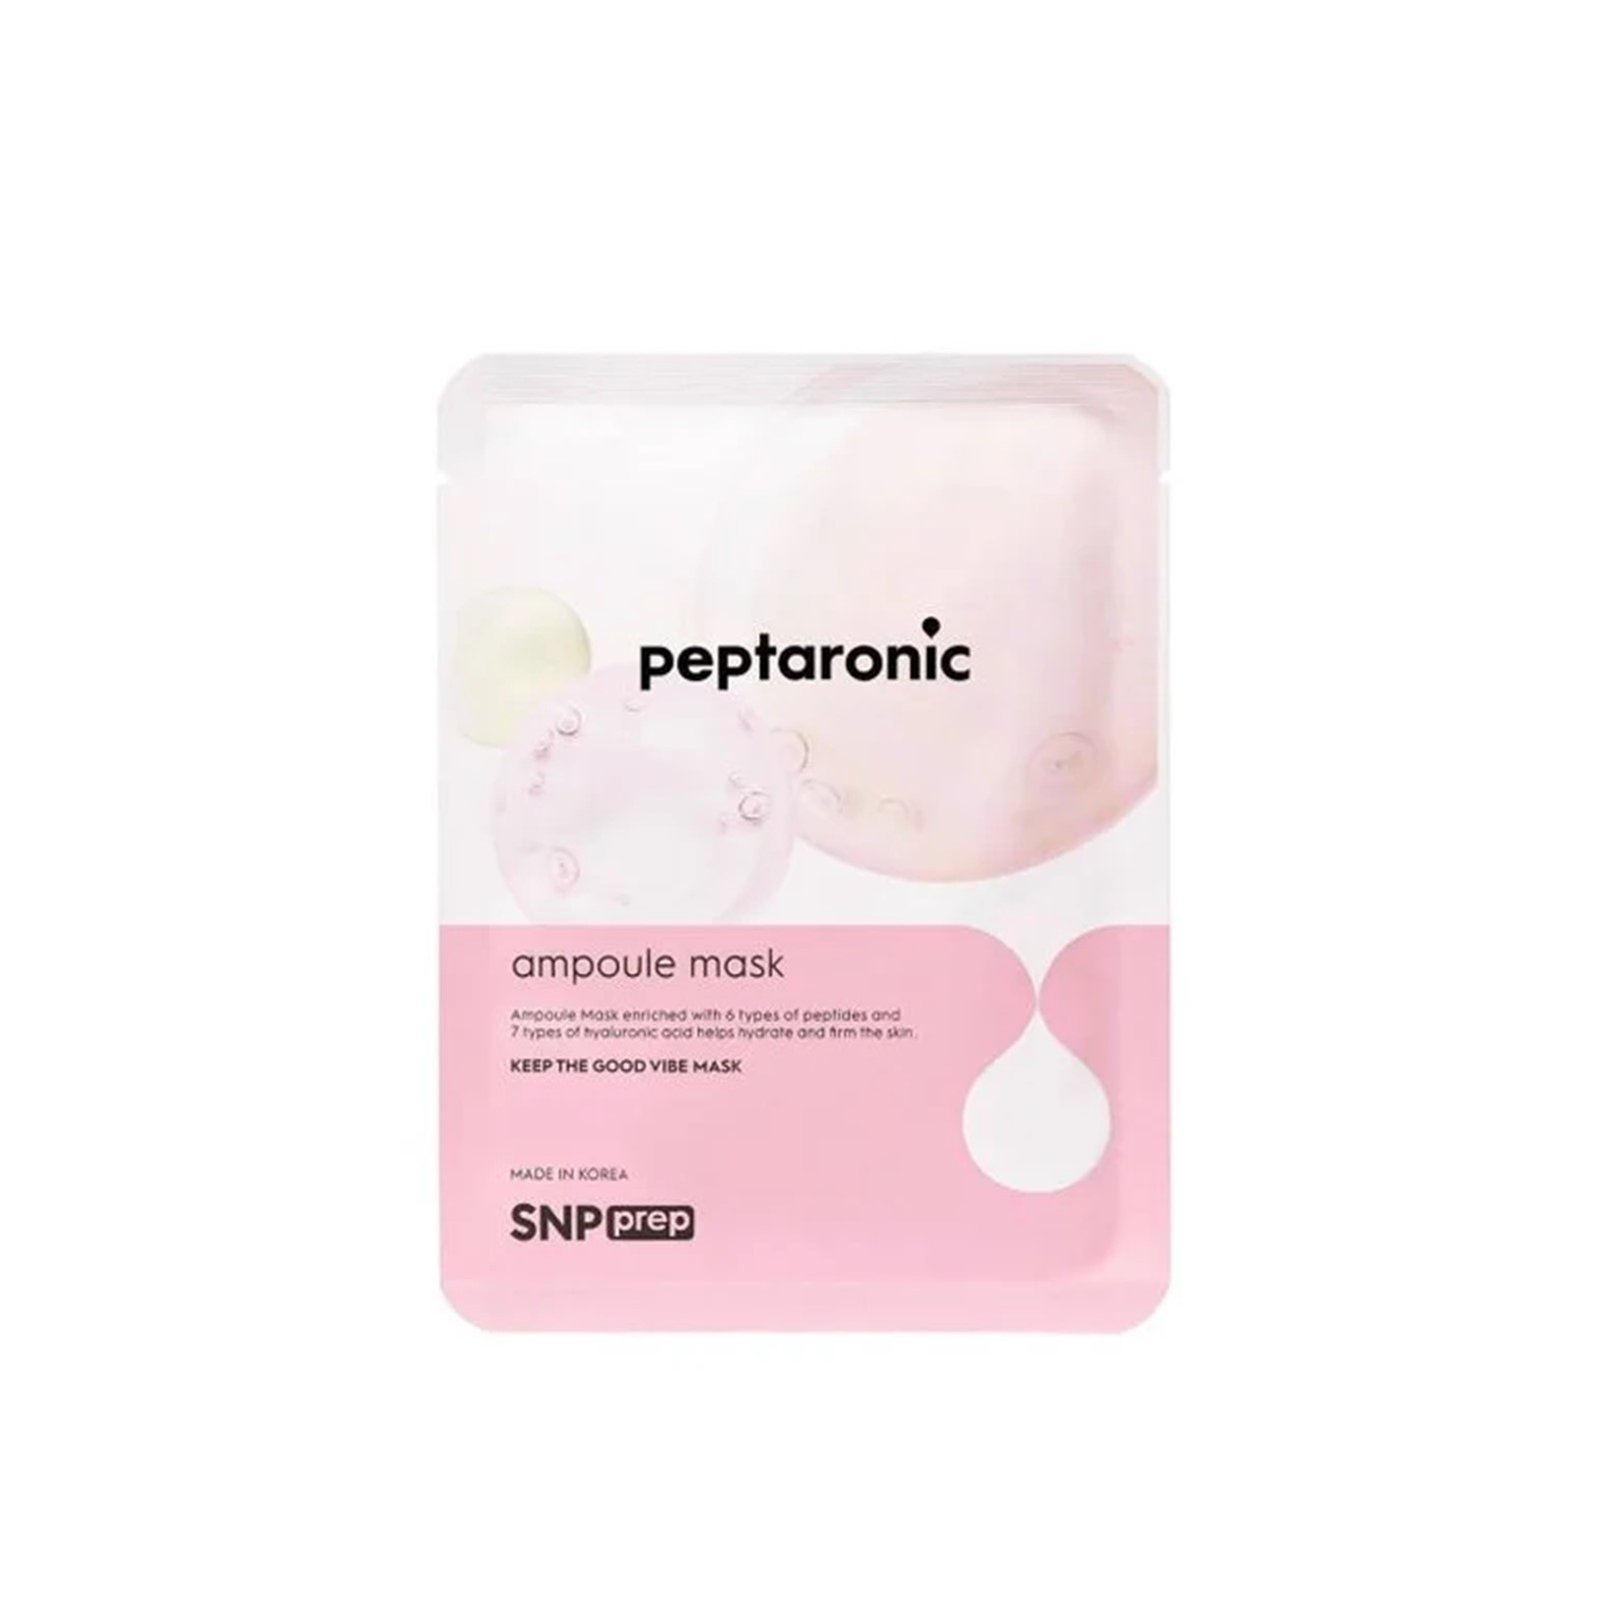 SNP Prep Peptaronic Ampoule Sheet Mask 25ml (0.84 fl oz)